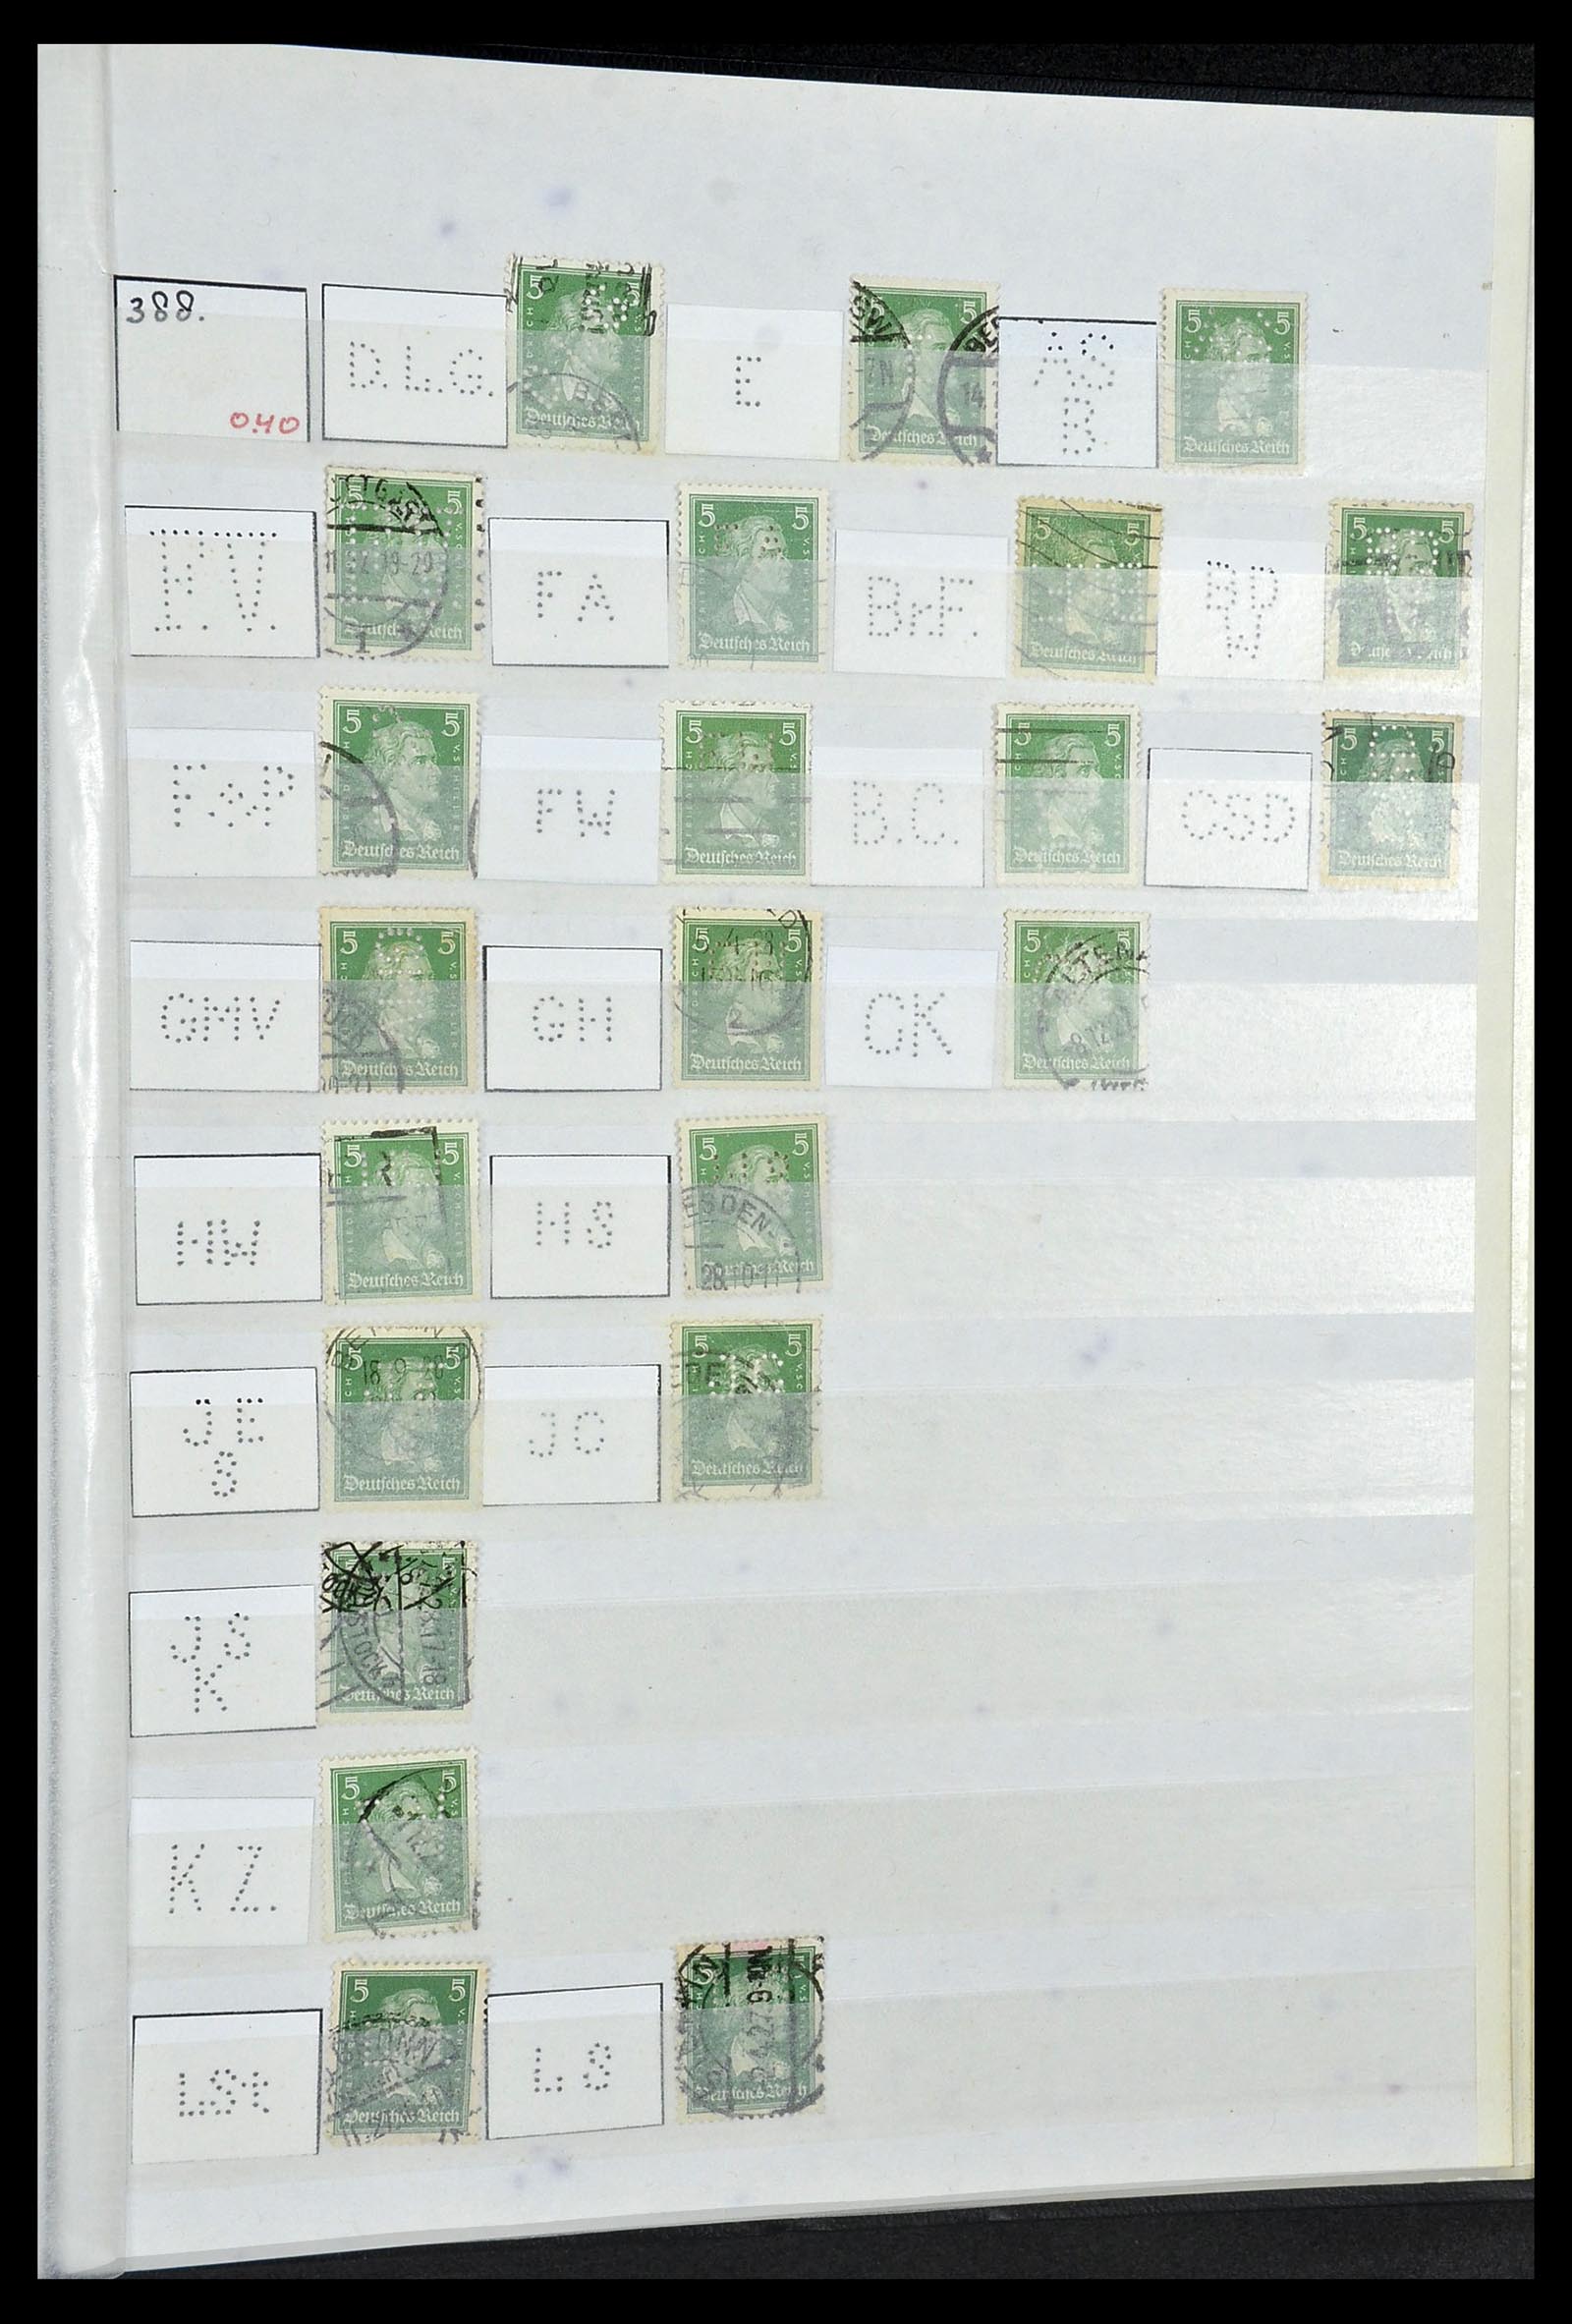 34071 059 - Stamp collection 34071 German Reich perfins 1923-1930.